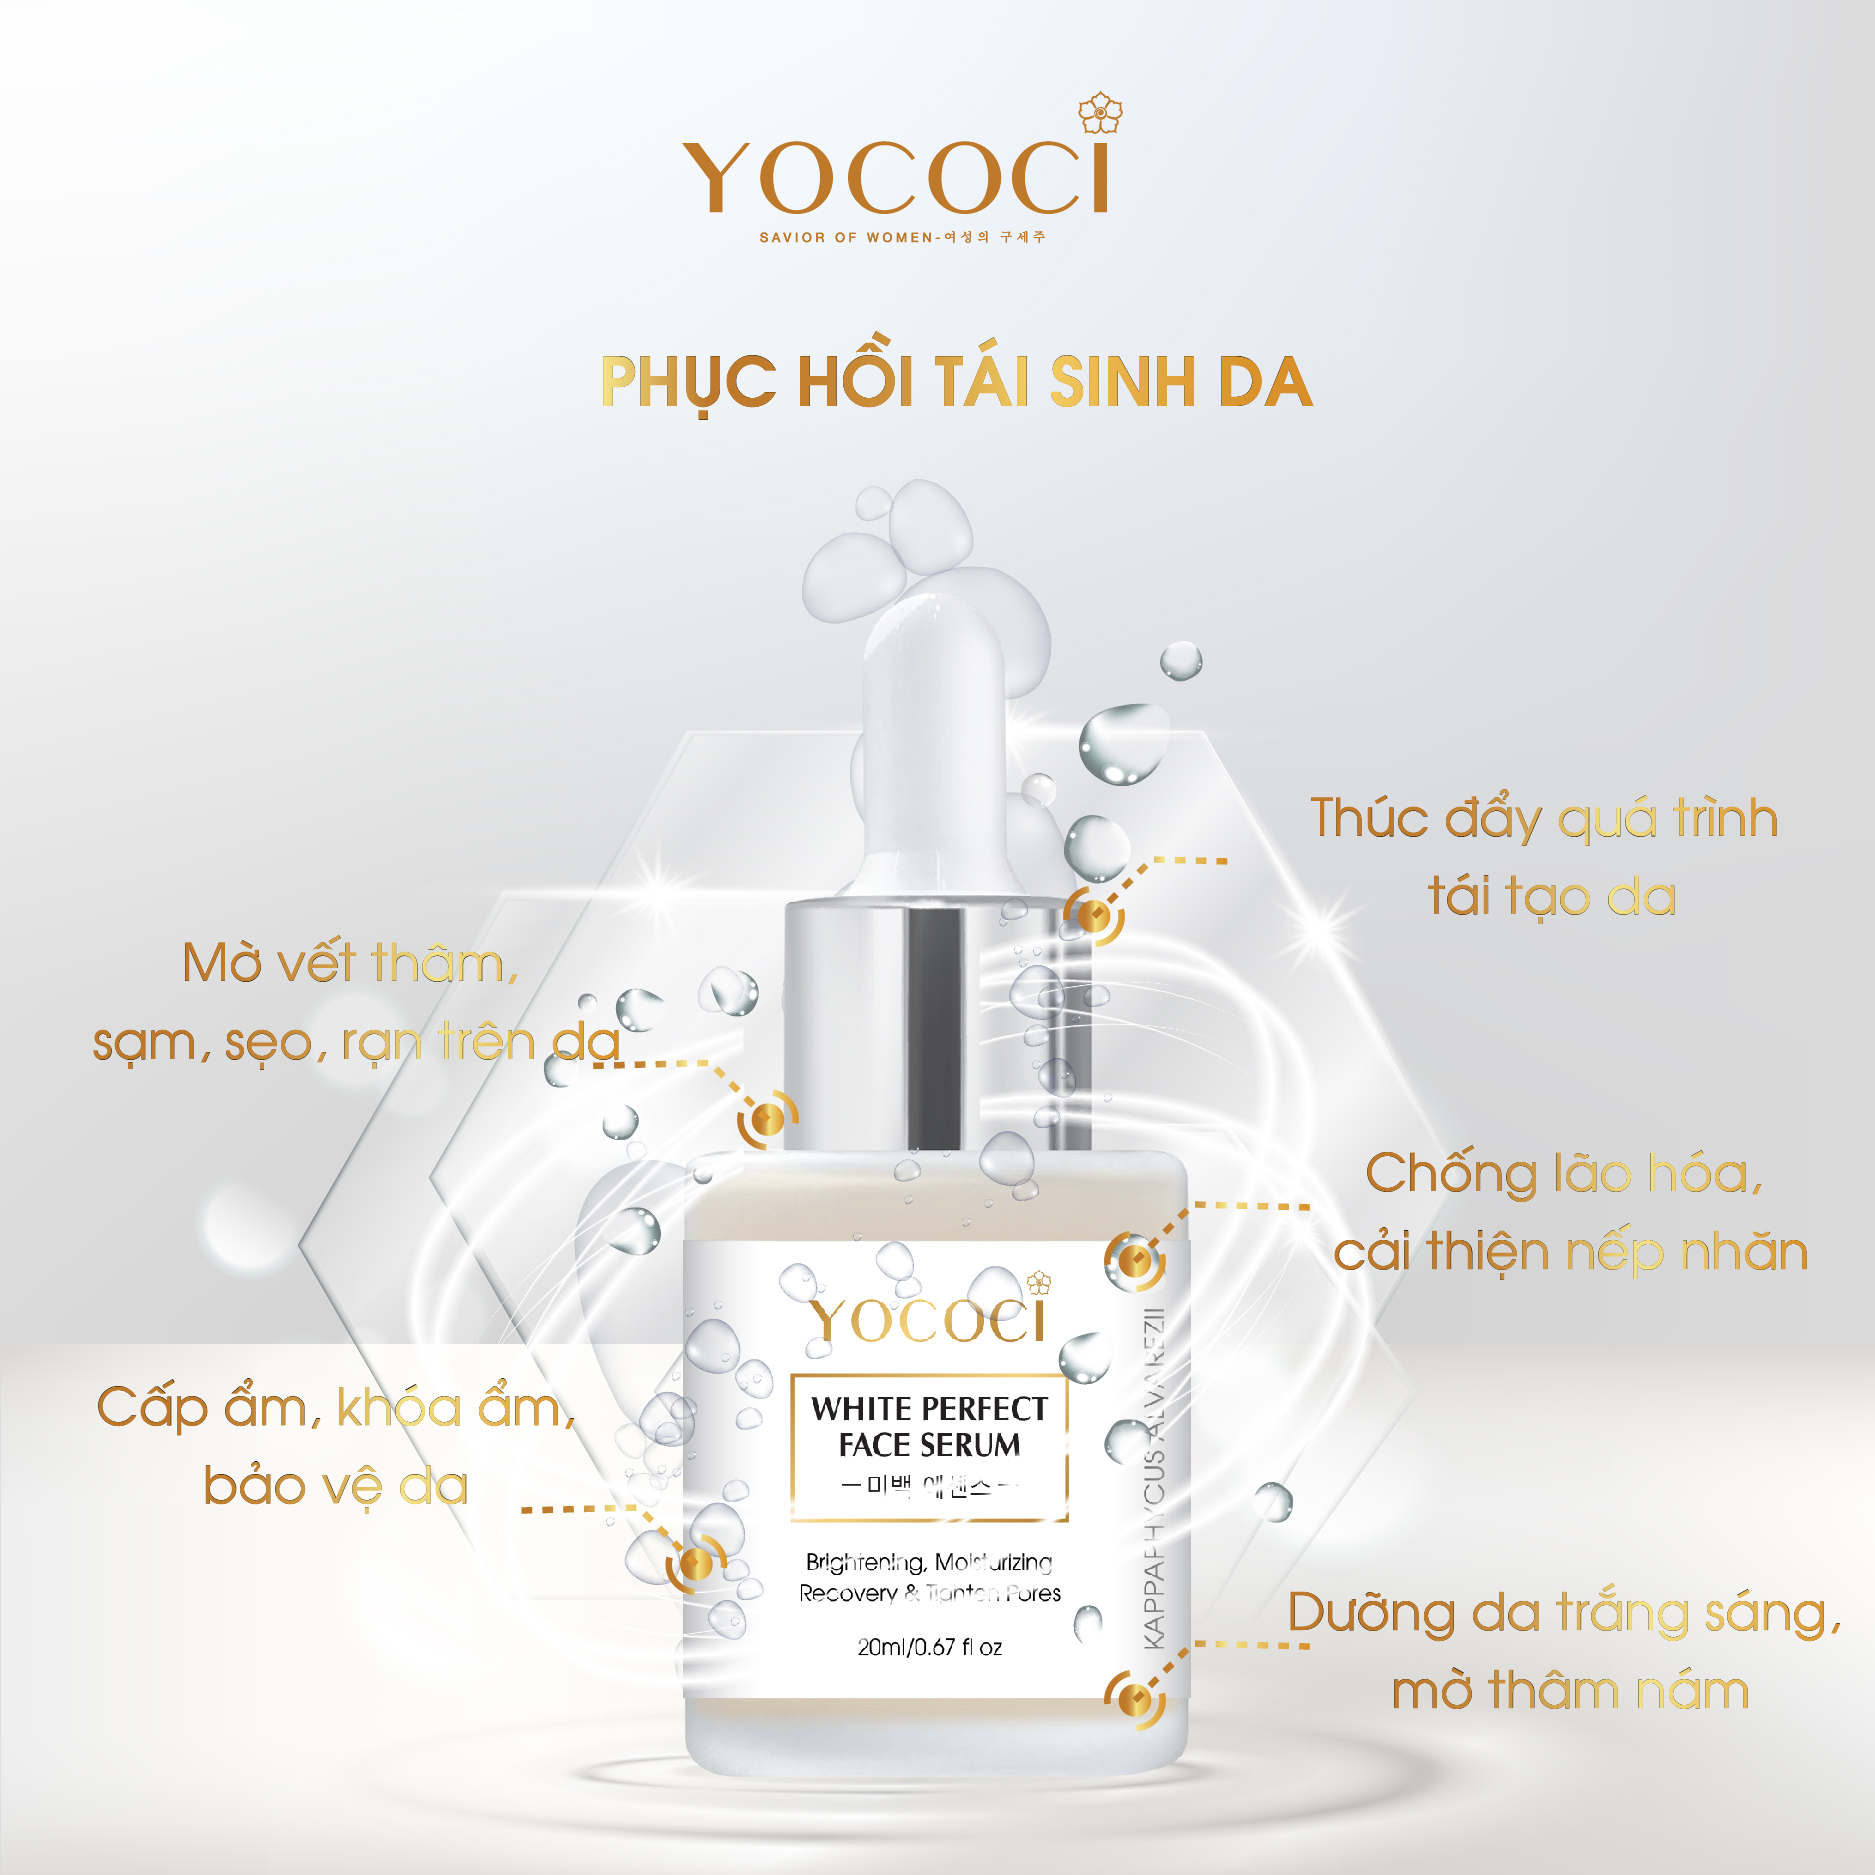 Bộ 4 sản phẩm Yococi (Kem Chống Nắng 50g + Kem Face 20g + Serum 20ml + Gel Chấm Mụn 15g )